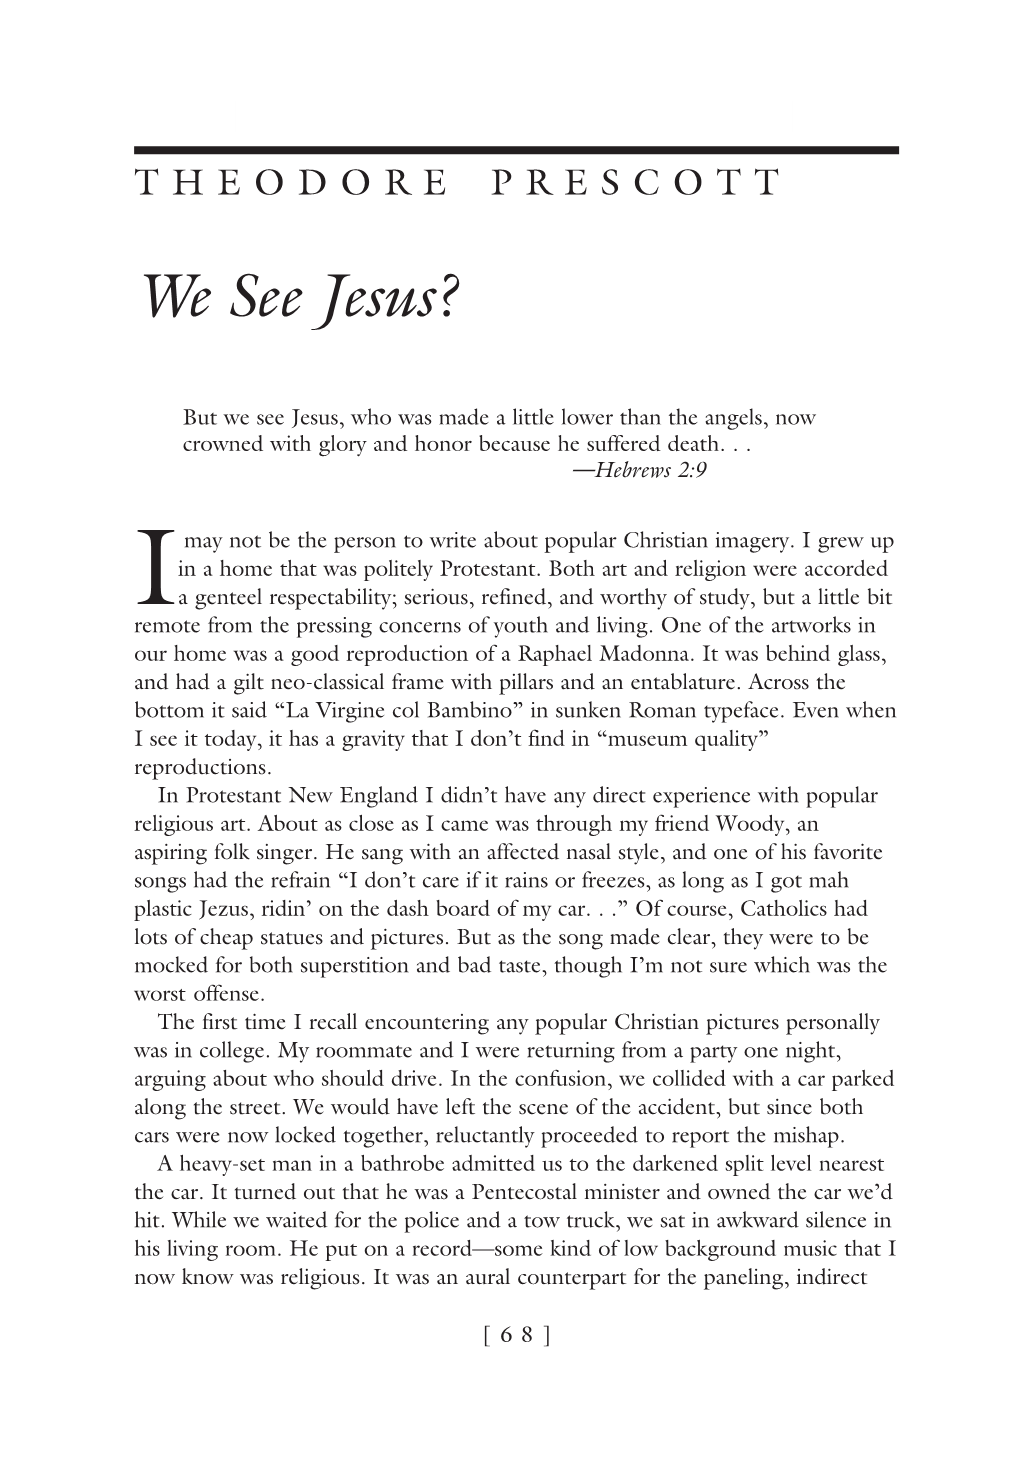 We See Jesus (PDF)